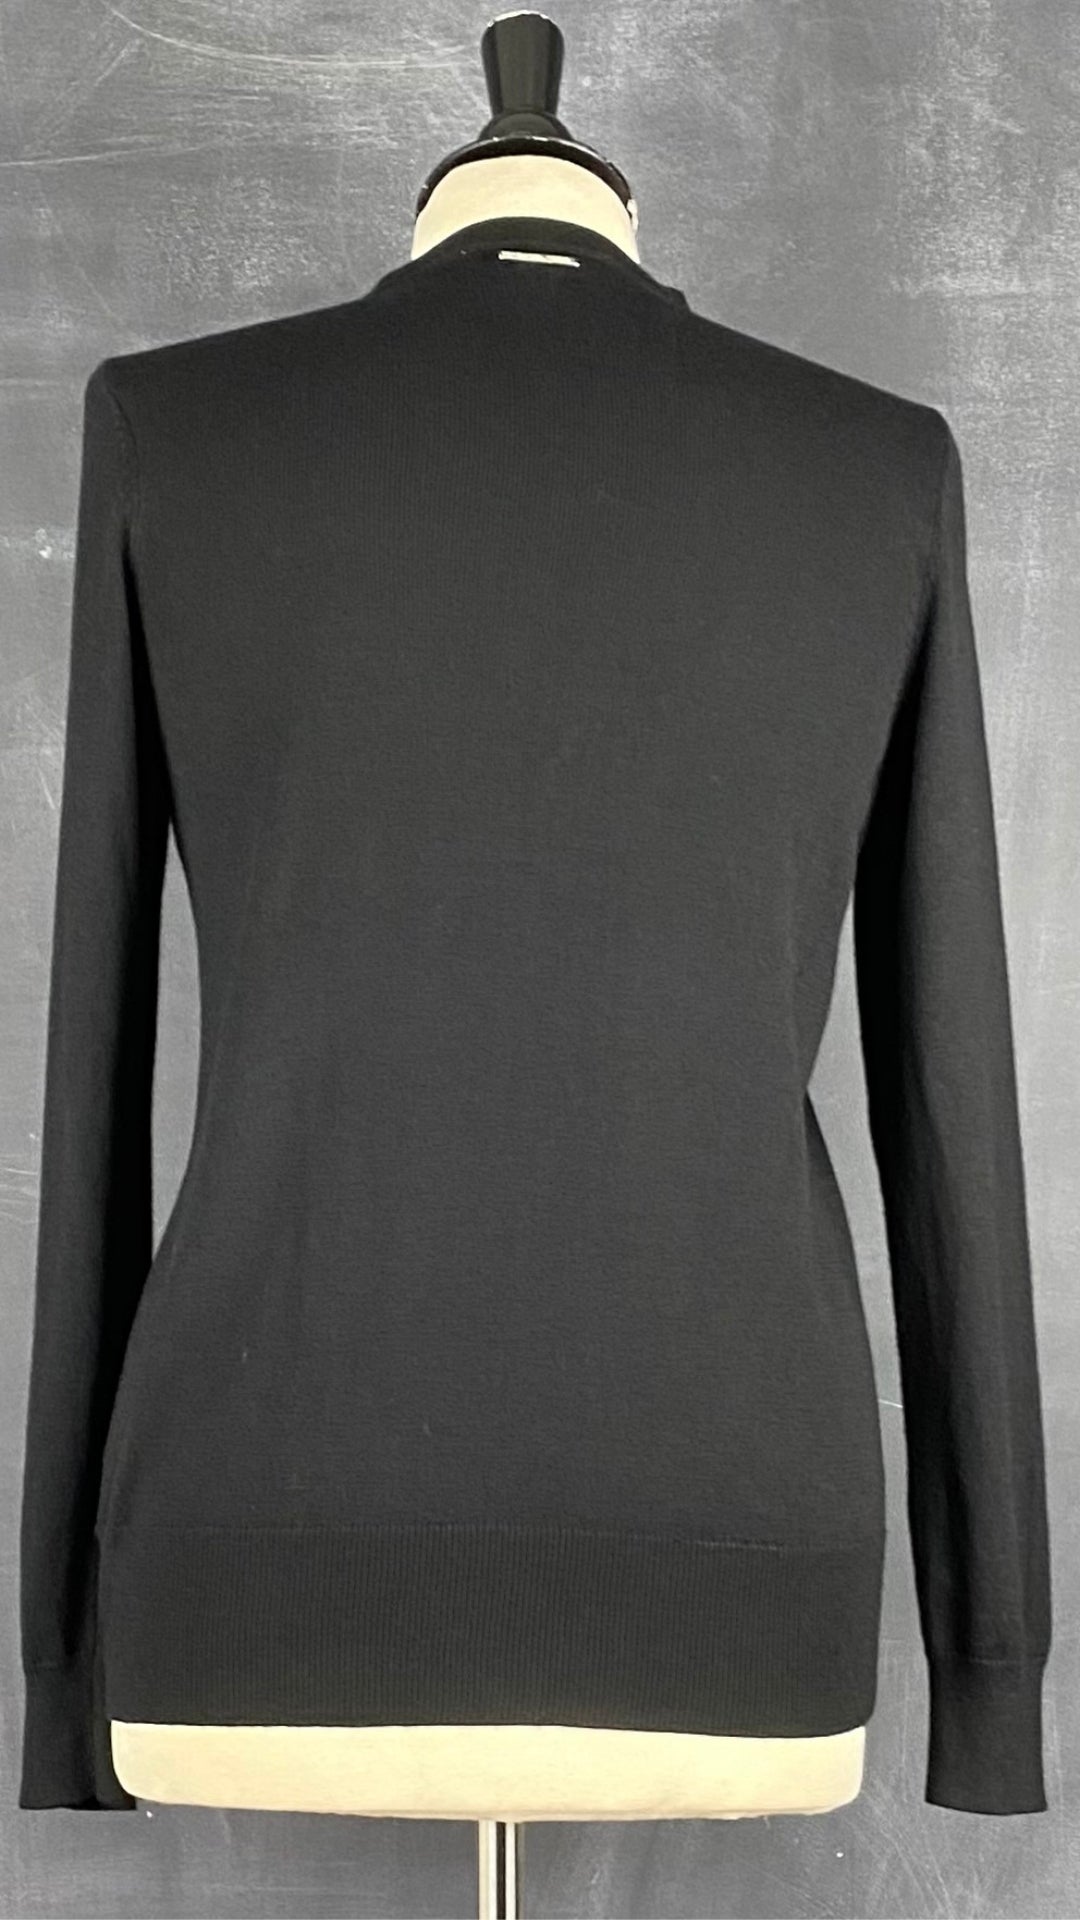 Chandail noir en tricot à encolure à ouvertures majestueuses Michael Kors, taille small. Vue de dos.